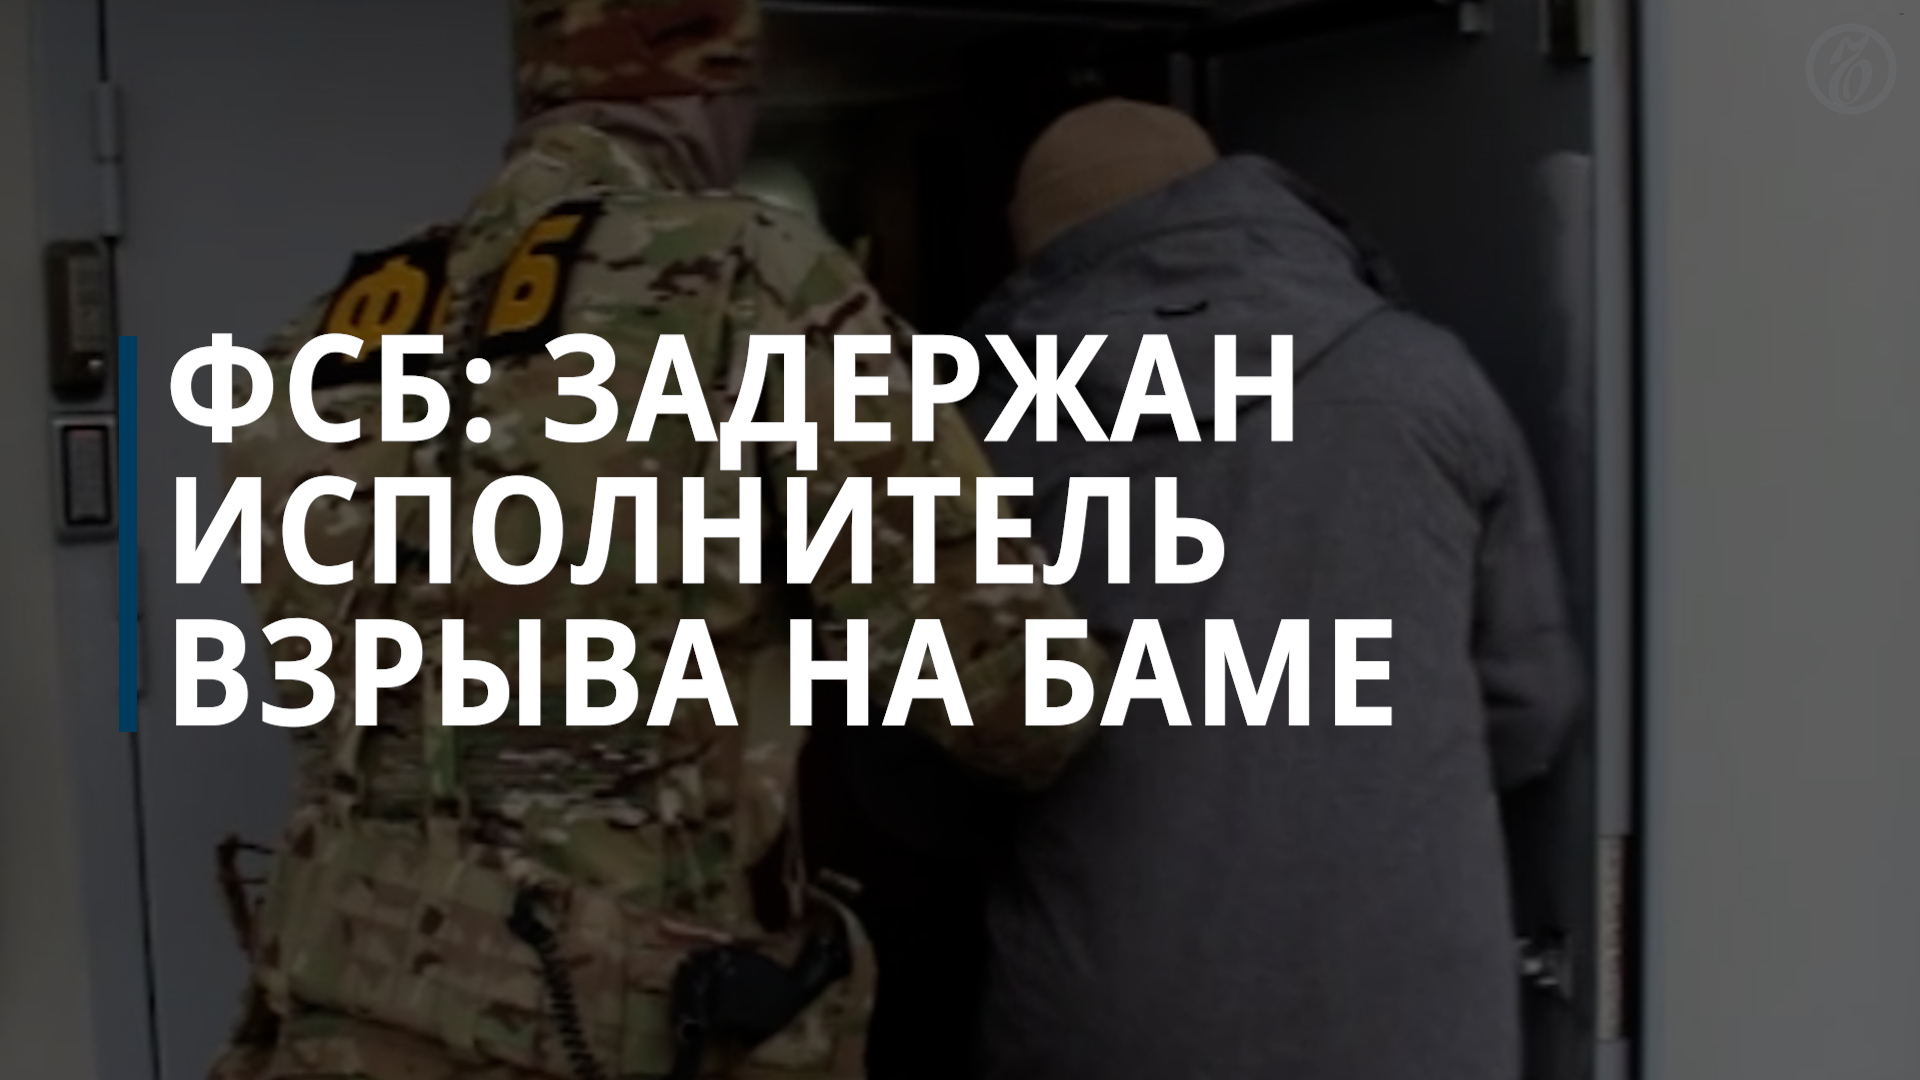 ФСБ: задержан исполнитель взрыва на БАМе, действовавший по заданию Украины — Коммерсантъ